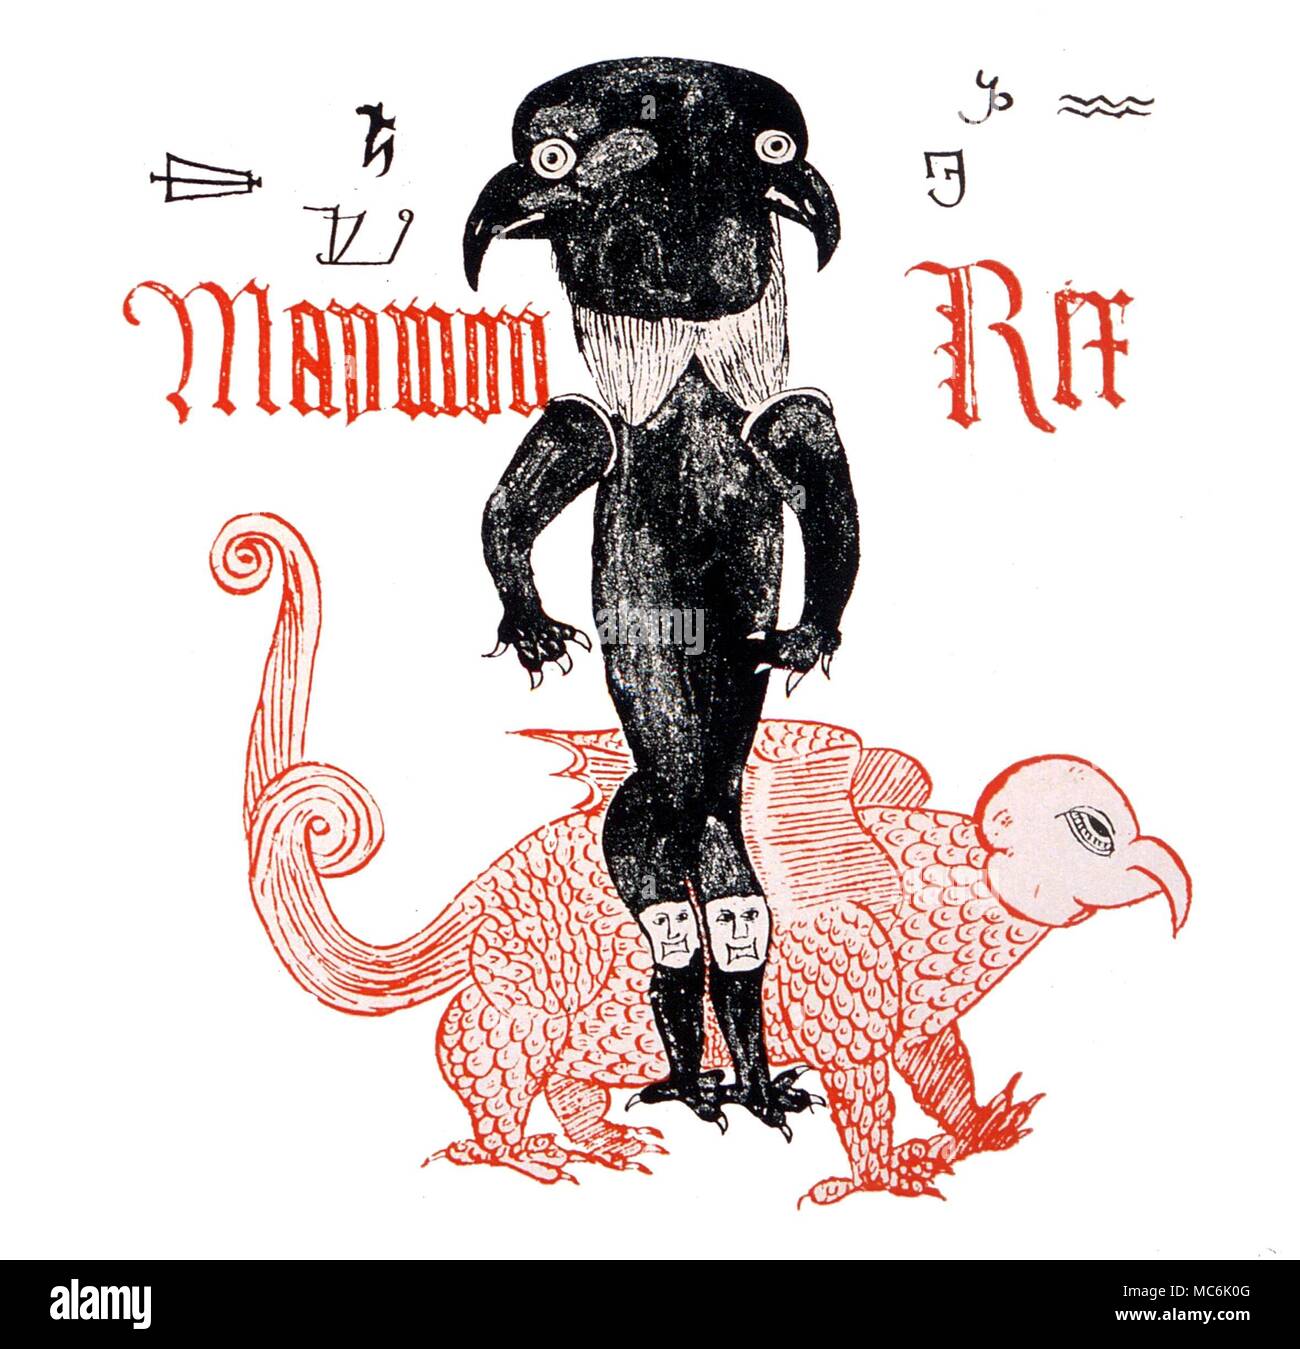 Dämonen - MAYMON REX. Die 'Dämon King' Maymon, von einem Englischen grimoire von C1500. Maymon ist eine Korruption des 'MAmmon". Private Sammlung Stockfoto